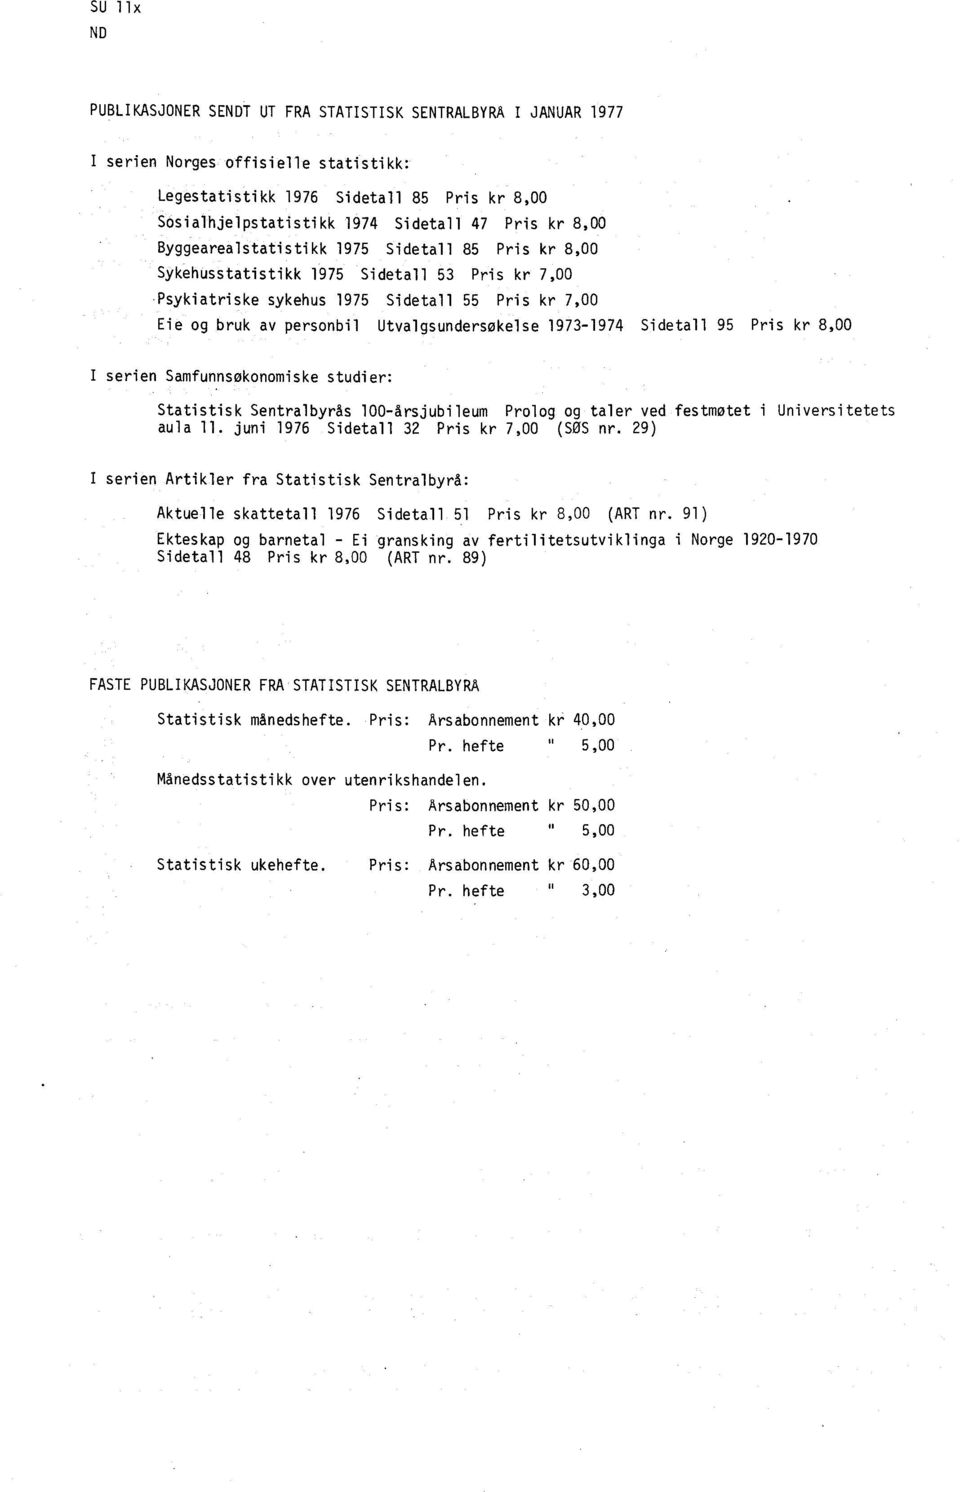 1973-1974 Sidetall 95 Pris kr 8,00 I serien Samfunnsøkonomiske studier: Statistisk Sentralbyrås 100-årsjubileum Prolog og taler ved festmotet i Universitetets aula 11.